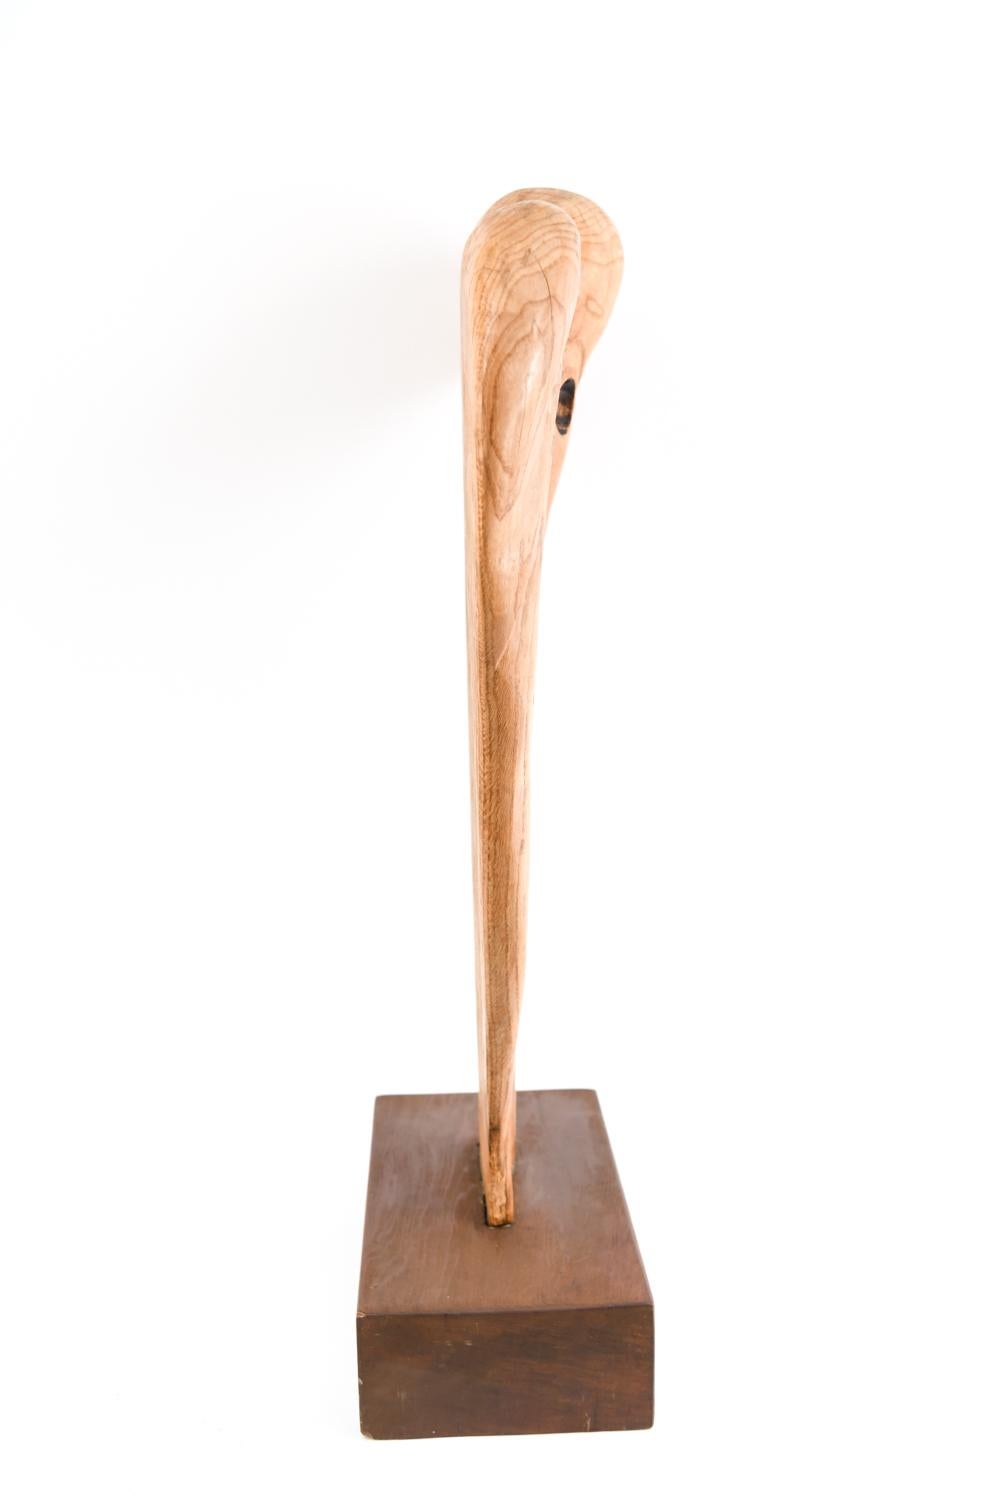 Abstract Modern Wood Sculpture 5